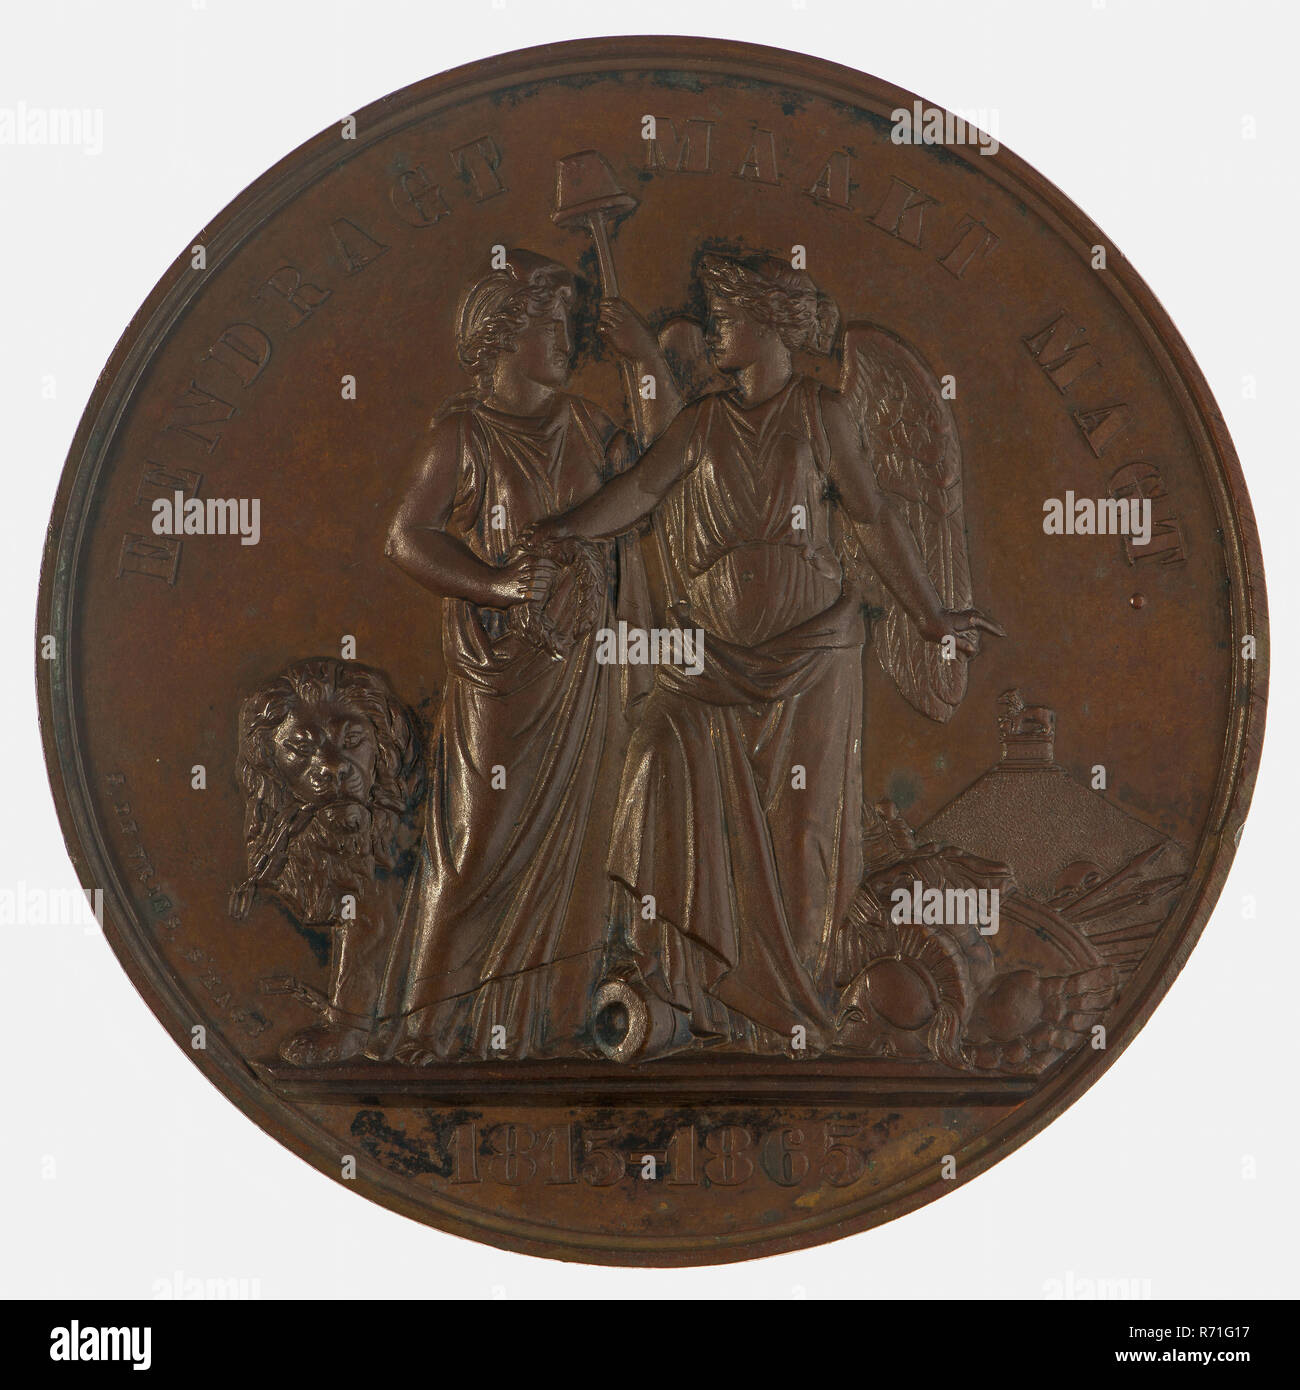 Bronze Waterloo commemorative medal